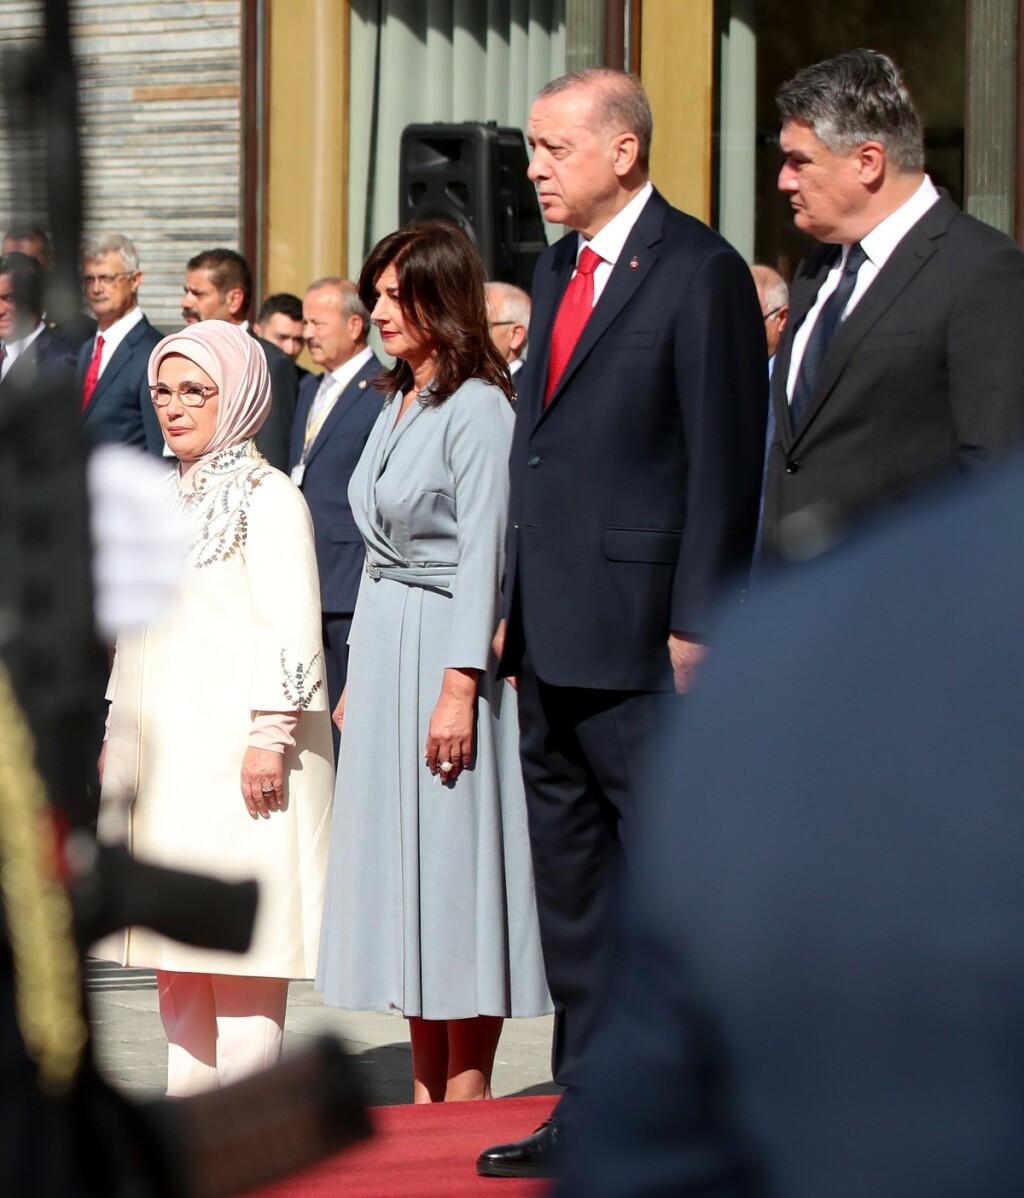 Turski predsjednik sa suprugom na Pantovčaku